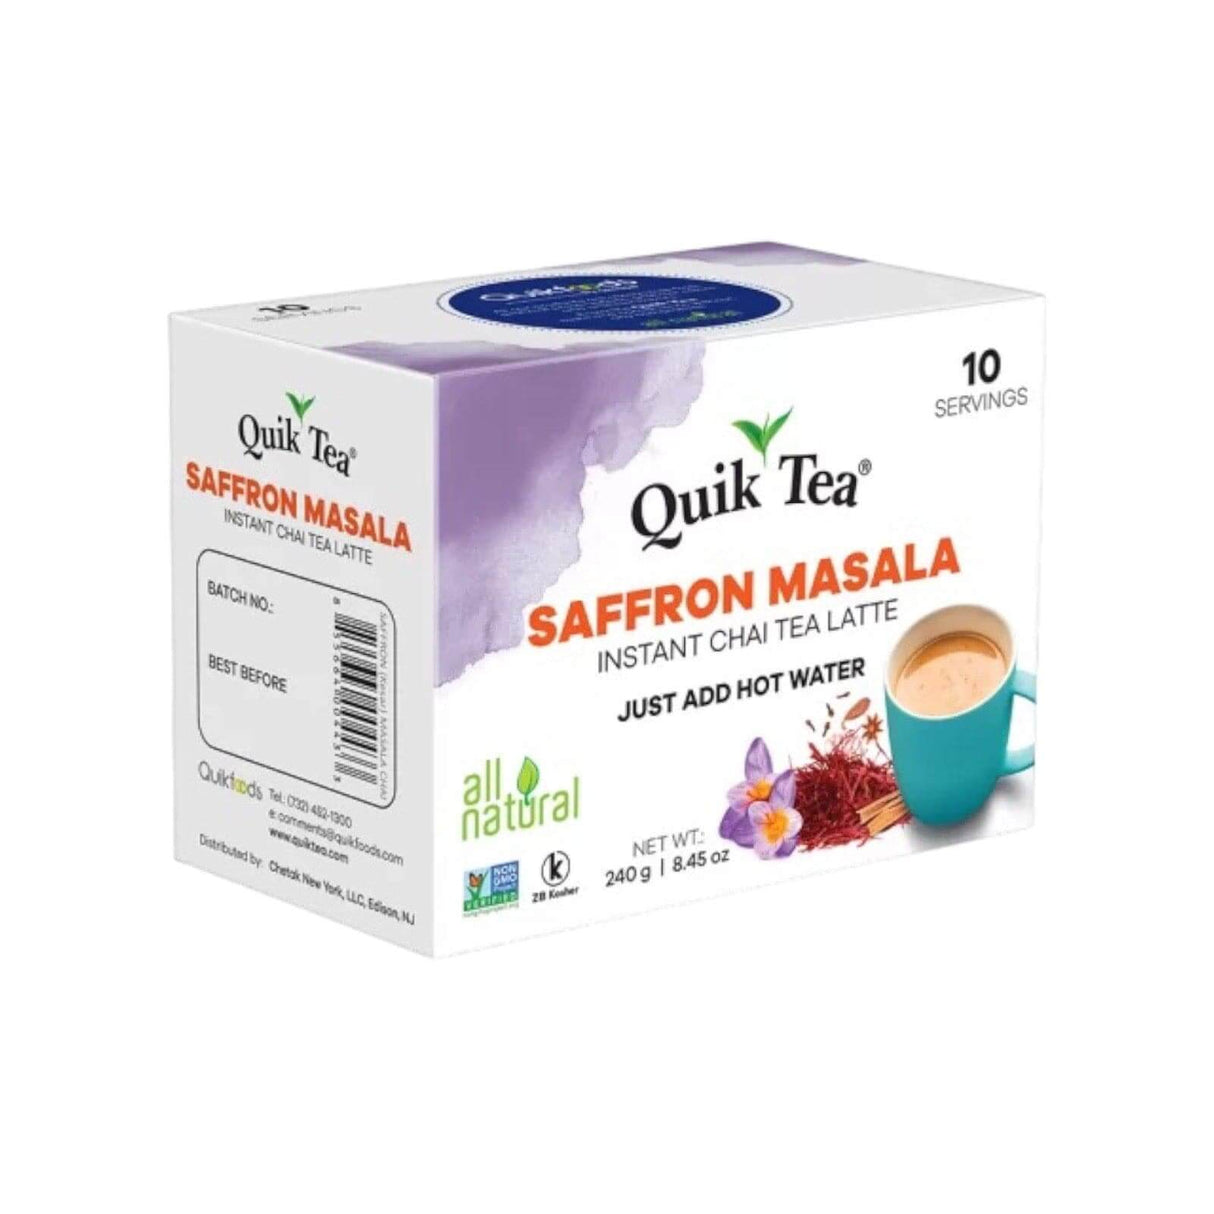 Quik Tea Saffron Masala Instant Chai Tea Latte